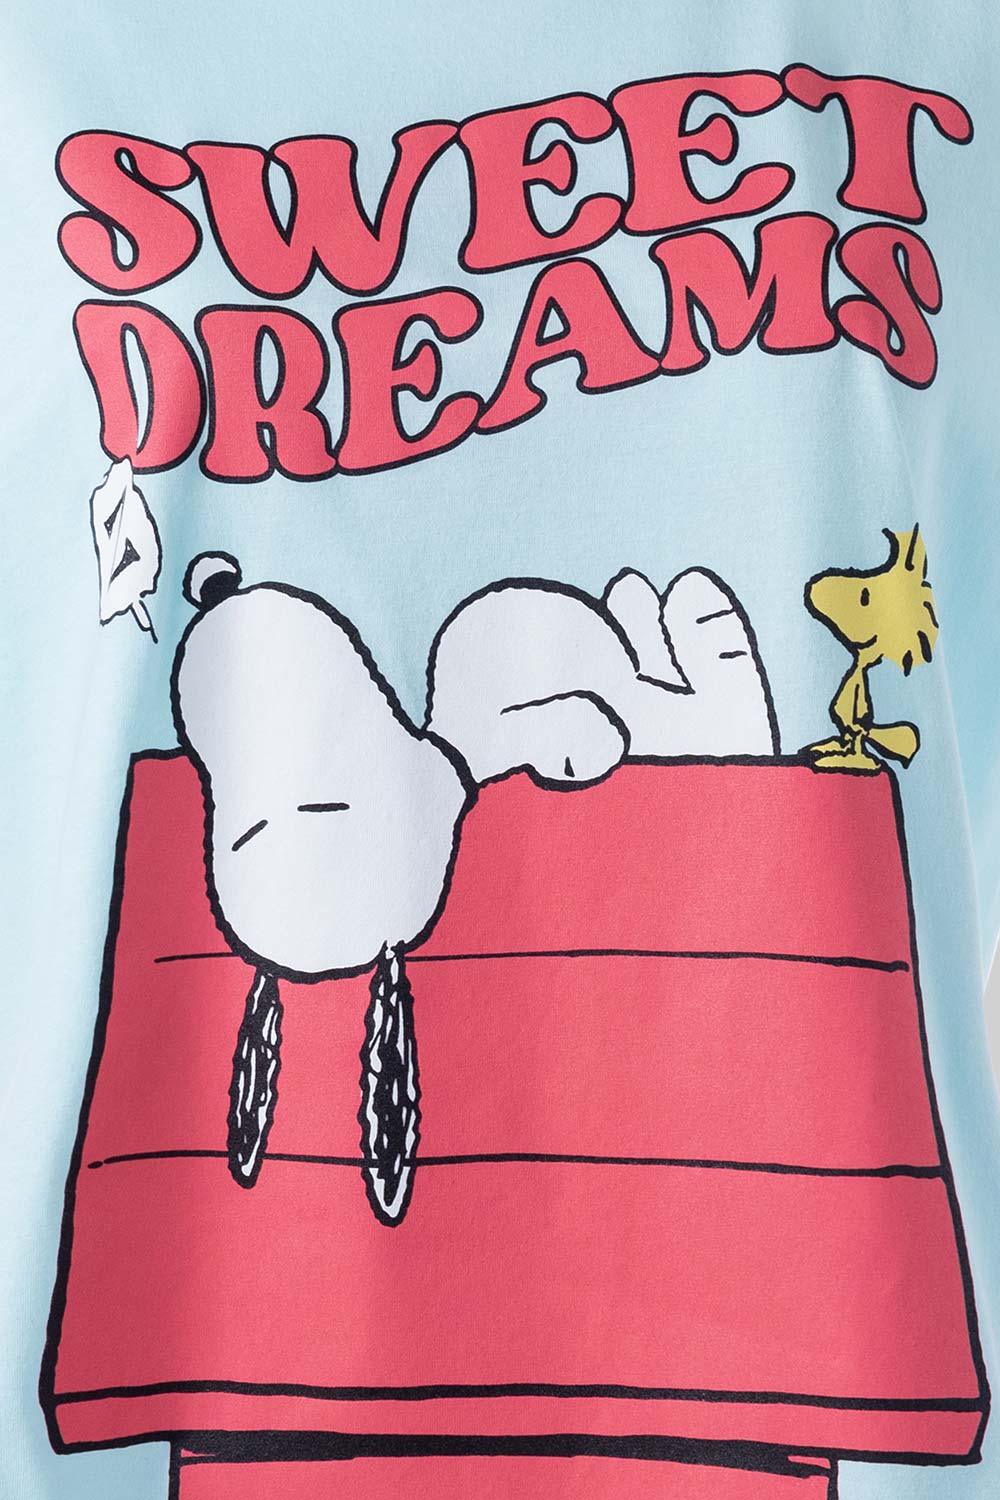 Pijama de Snoopy con pantalón largo rosada para mujer - MoviesShop